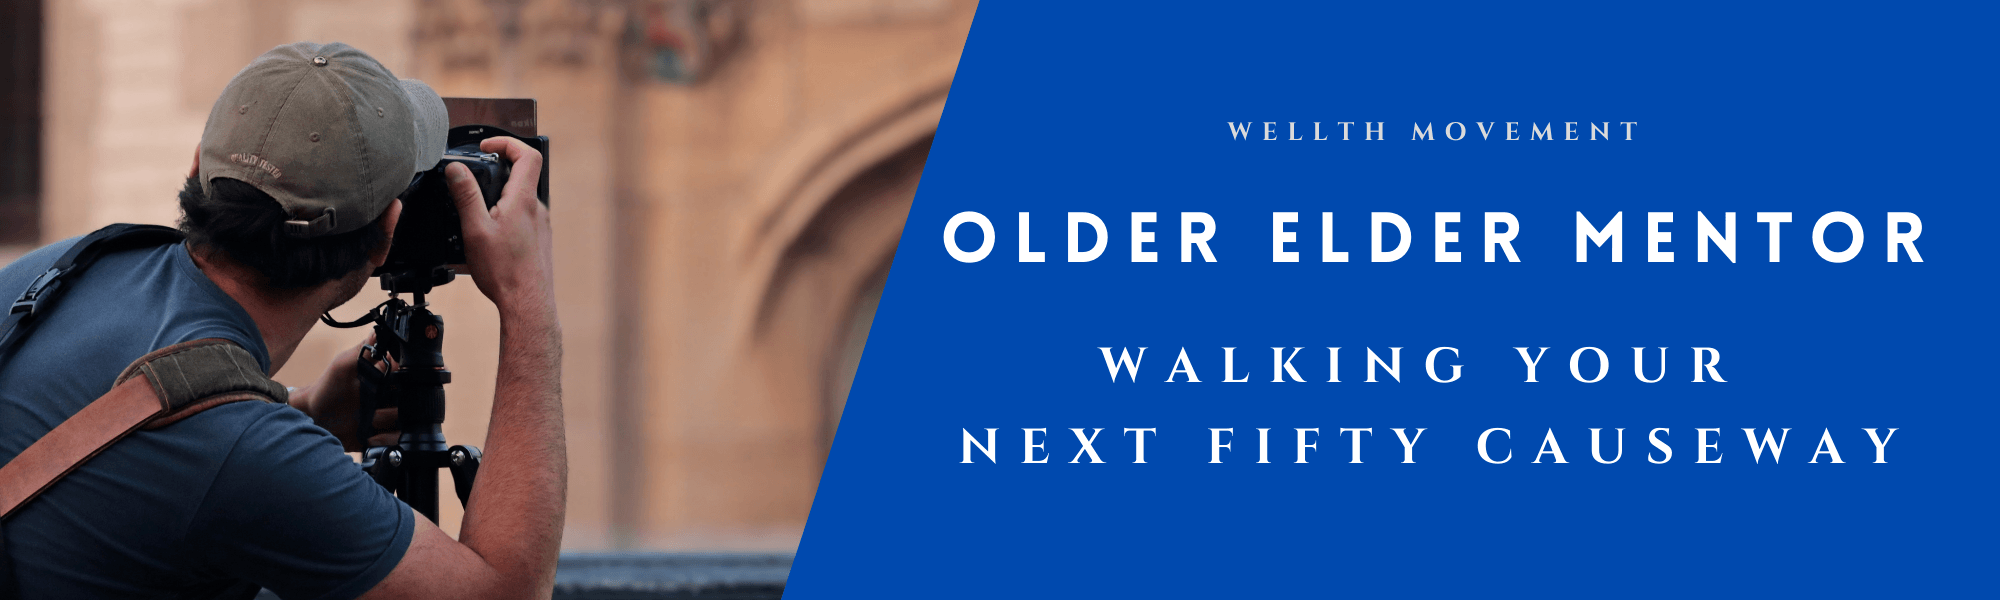 Older Elder